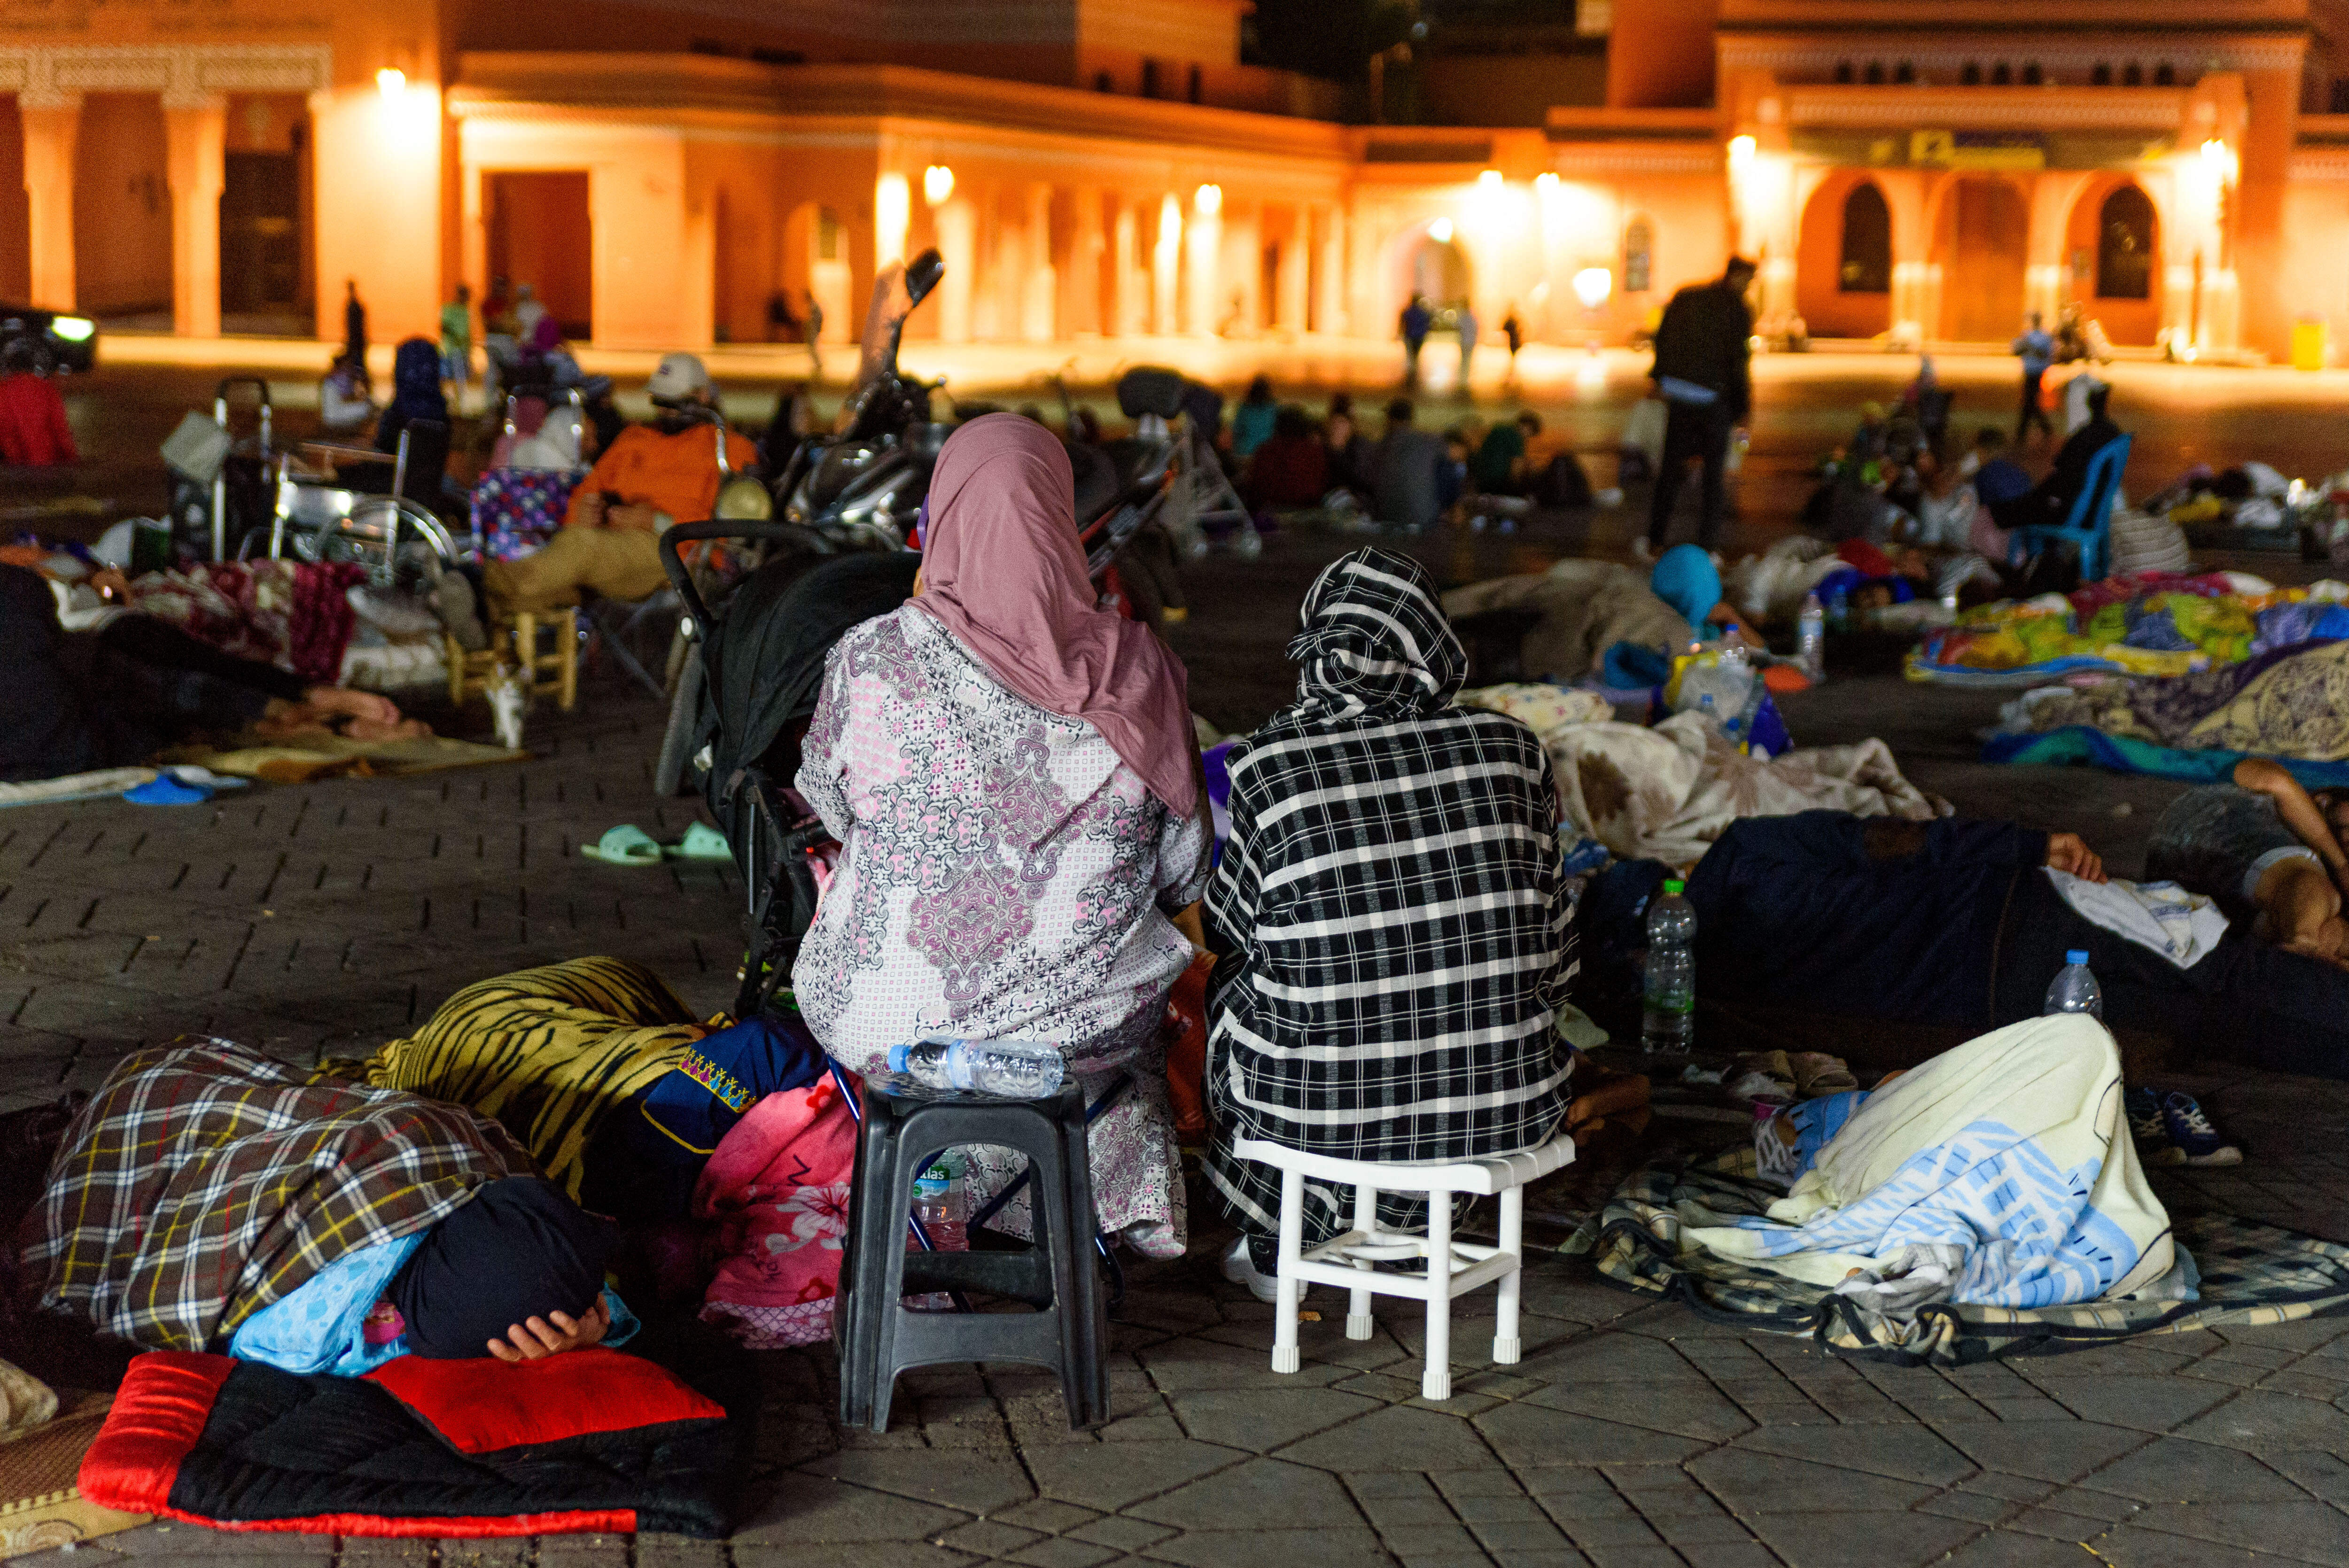 Le couple disparu séjournait à Marrakech où, désormais, la très touristique et emblématique place Jemaa el-Fna accueille des rescapés et des gens qui ont peur de retourner dormir chez eux. Abaca/SPUS/Davide Bonaldo